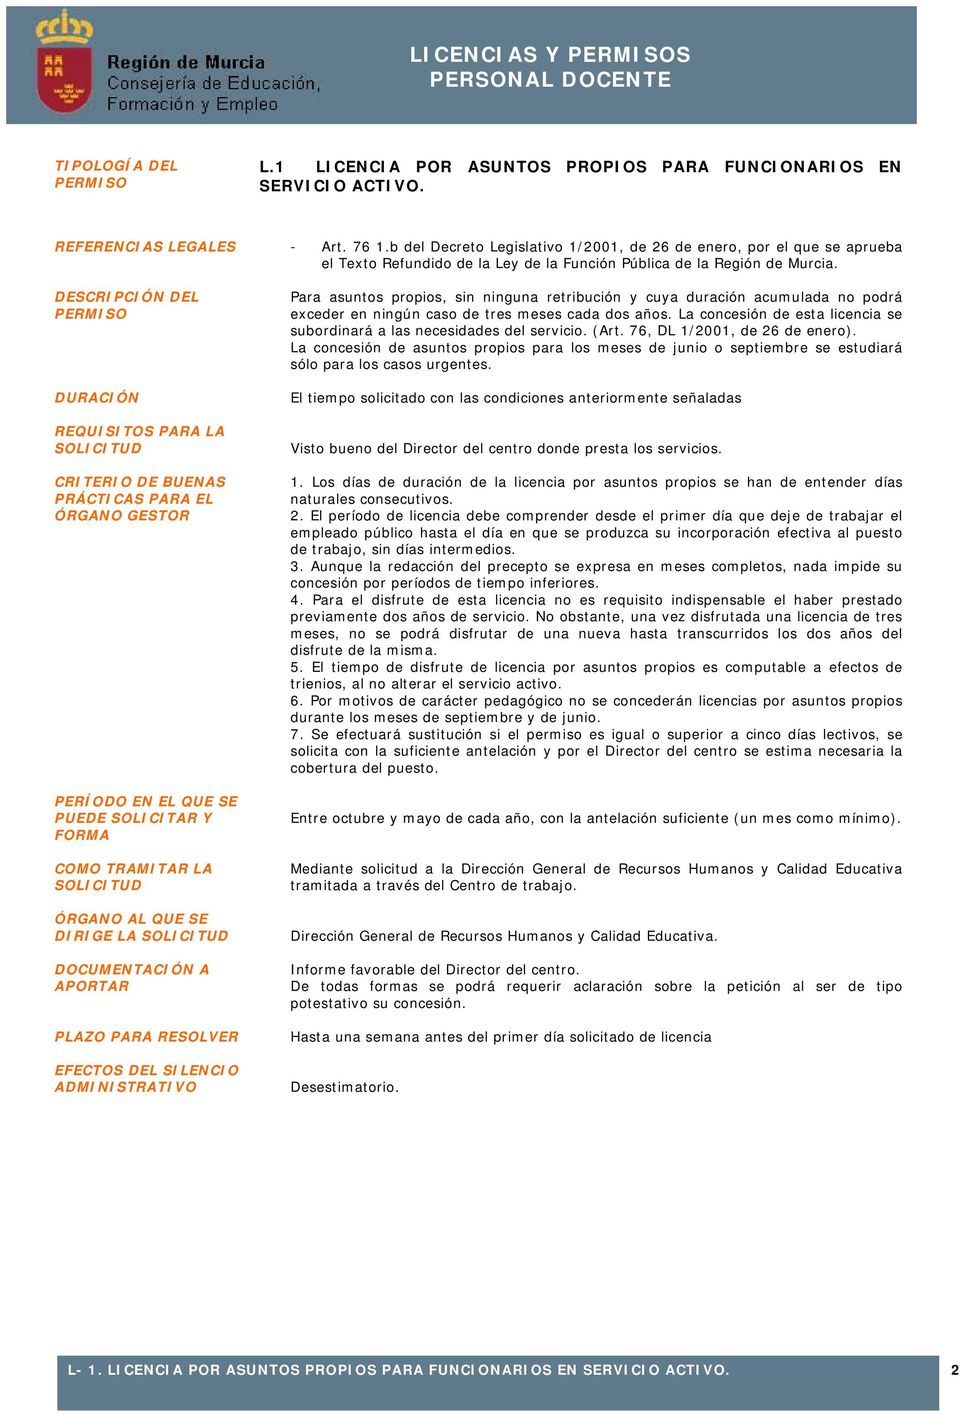 b del Decreto Legislativo 1/2001, de 26 de enero, por el que se aprueba el Texto Refundido de la Ley de la Función Pública de la Región de Murcia.